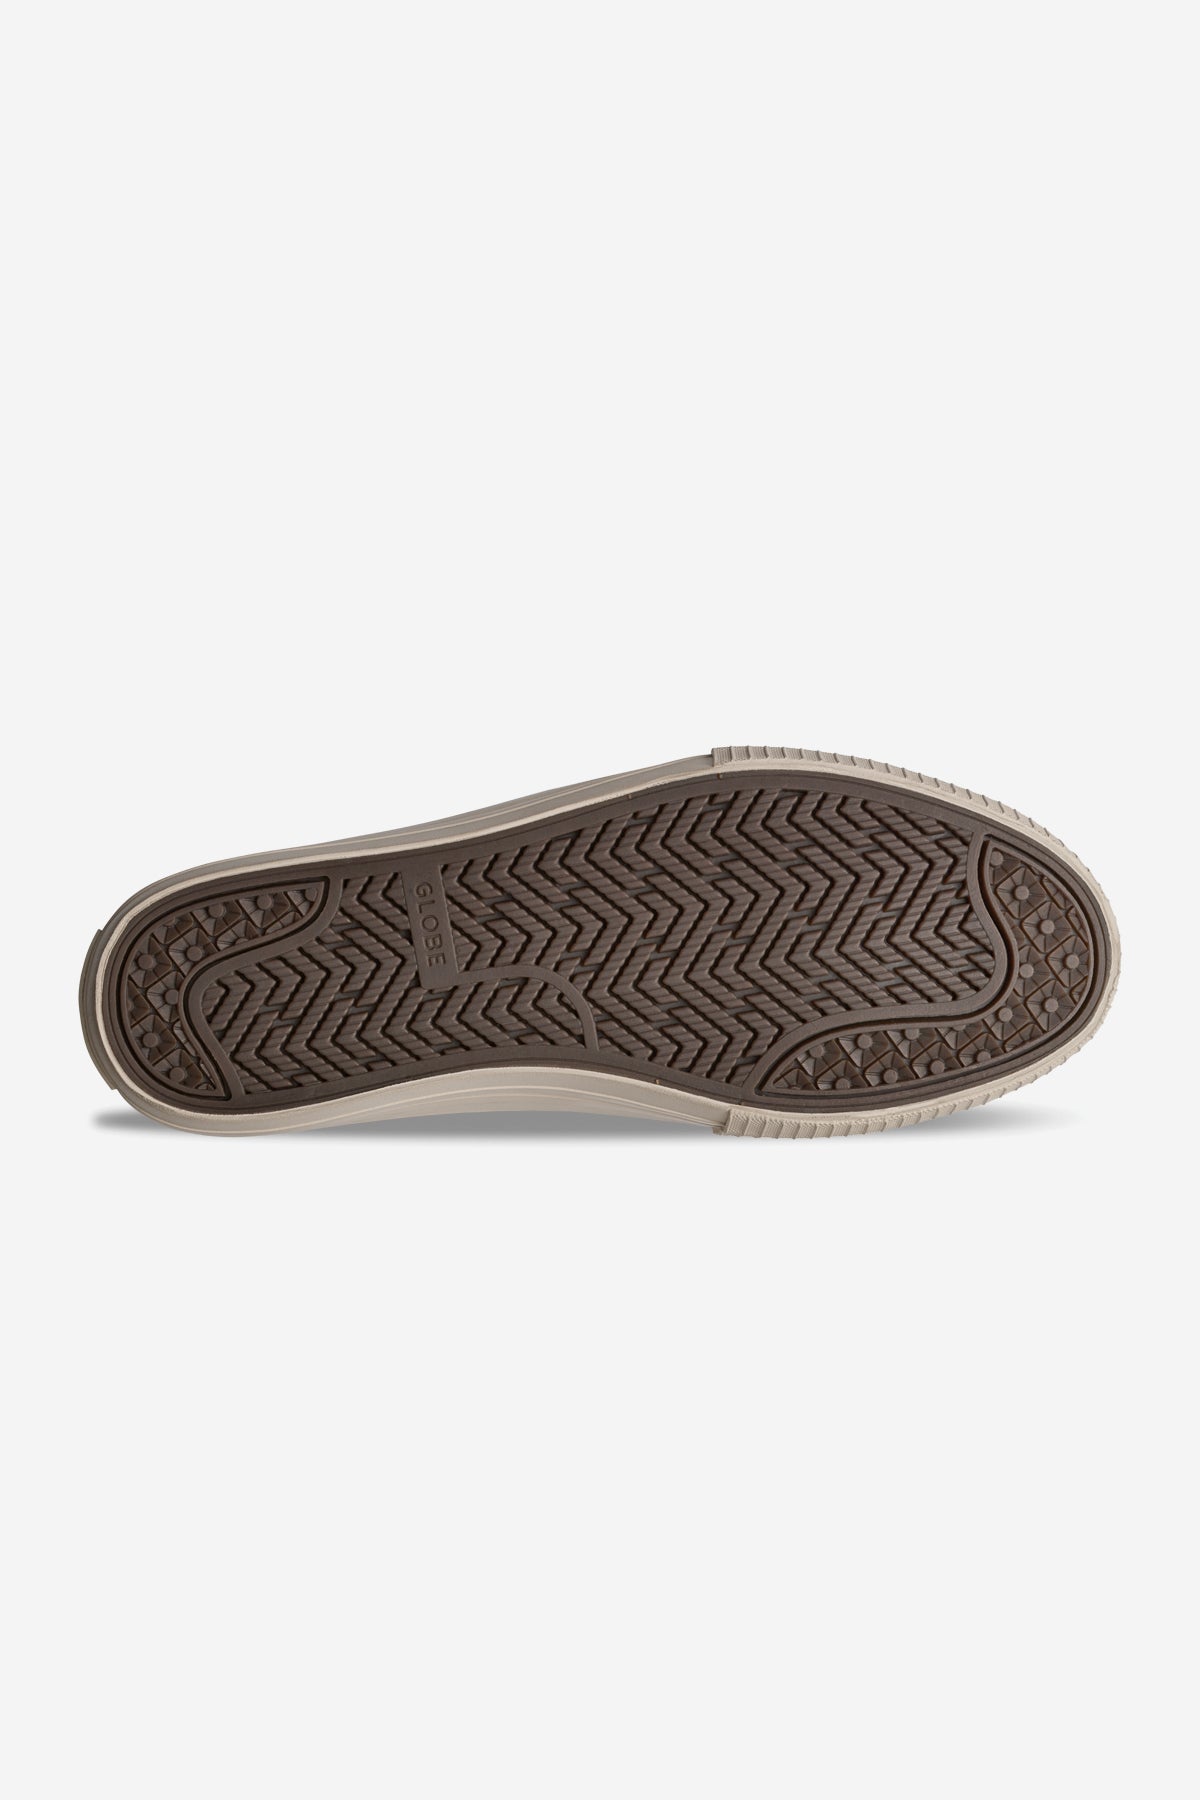 Globe - Gillette - Olive/Cream - skateboard Shoes